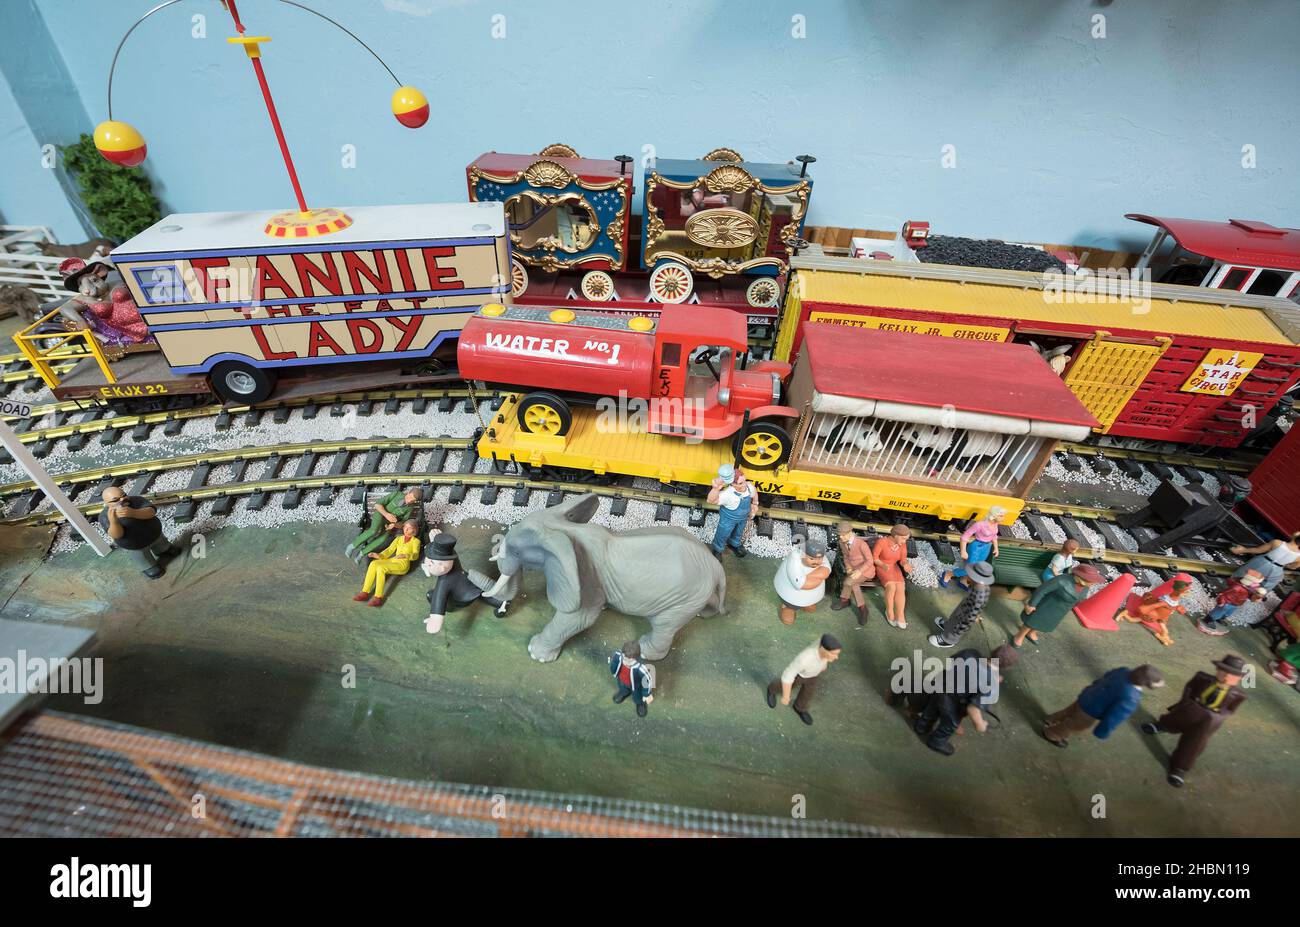 Una colección de circo en miniatura llena un garaje. Foto de stock